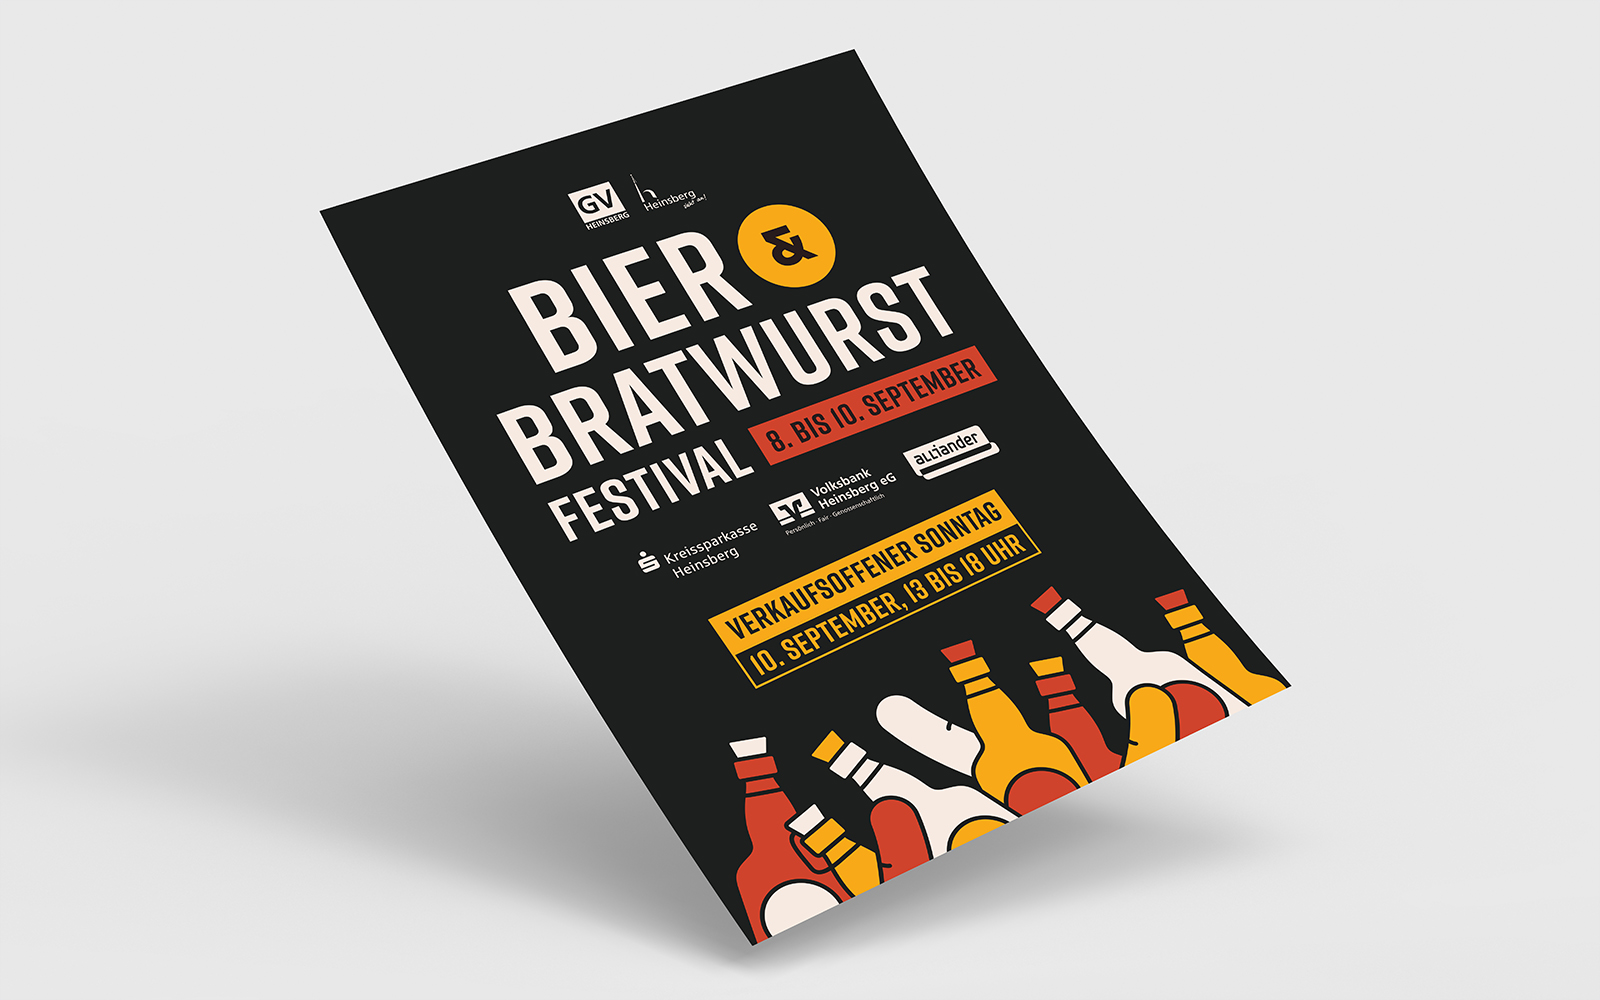 Bier- und Bratwurst Festival in Heinsberg: Drei Tage feinste Braukunst und Bratwurstkultur